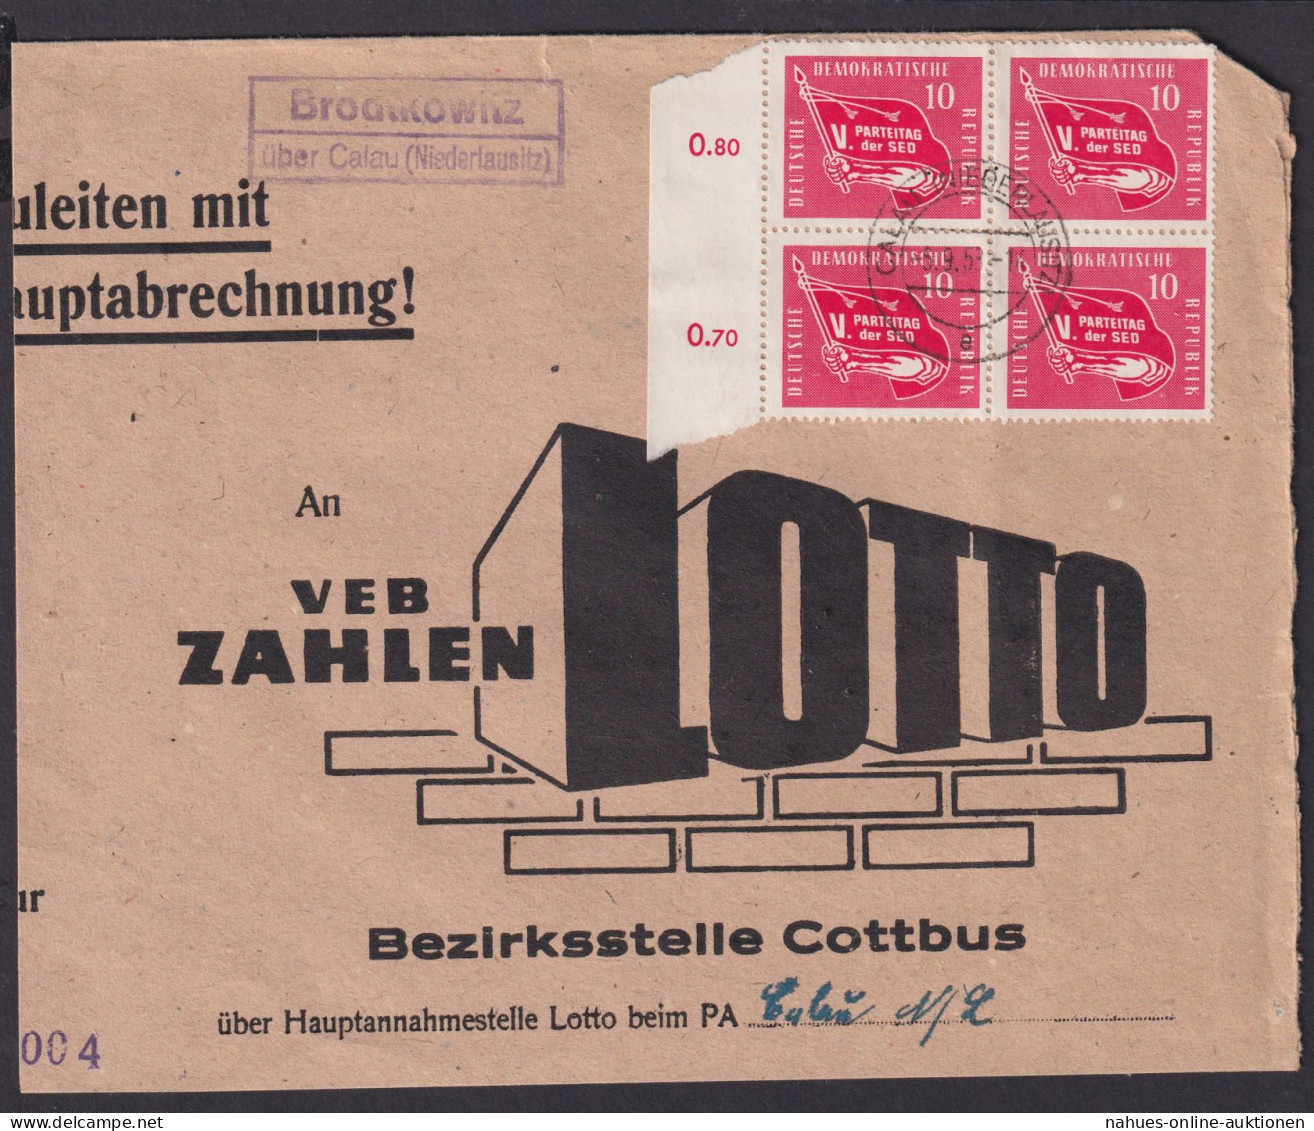 Brodtkowitz über Calau Niederlausitz Brandenburg DDR Brief Landpoststempel - Lettres & Documents